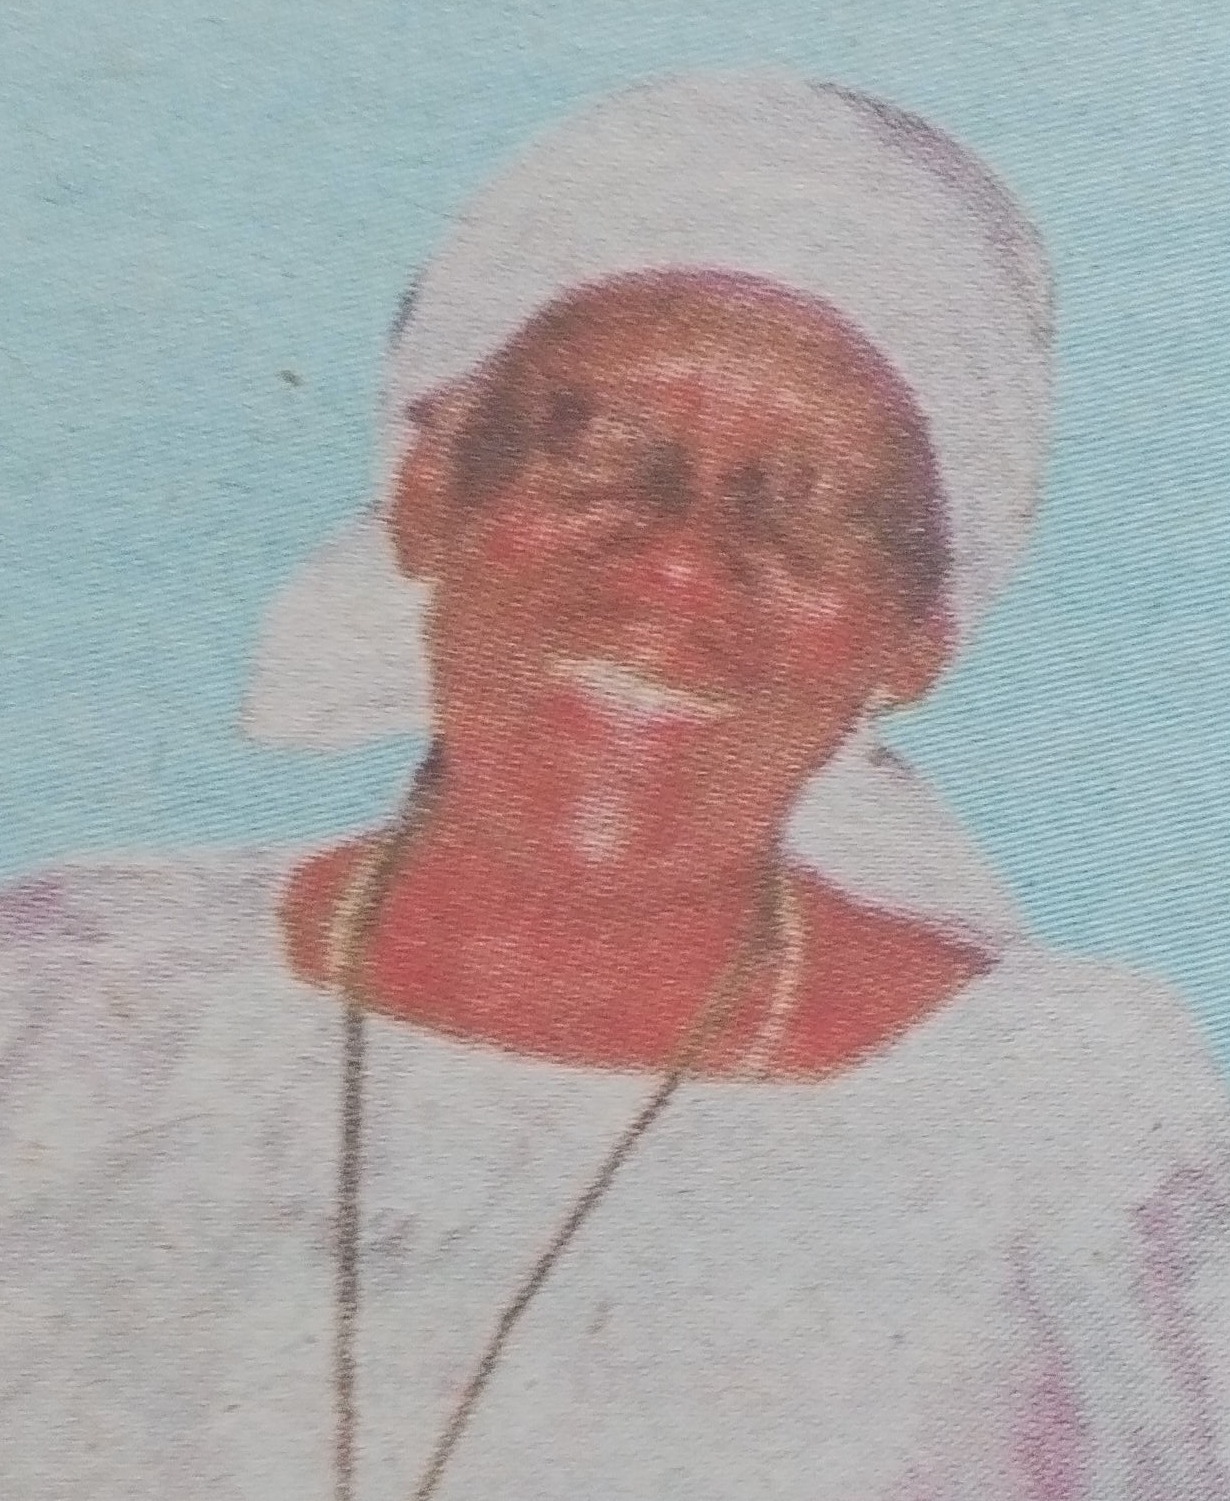 Obituary Image of Leticia Nyaboke Ngoge